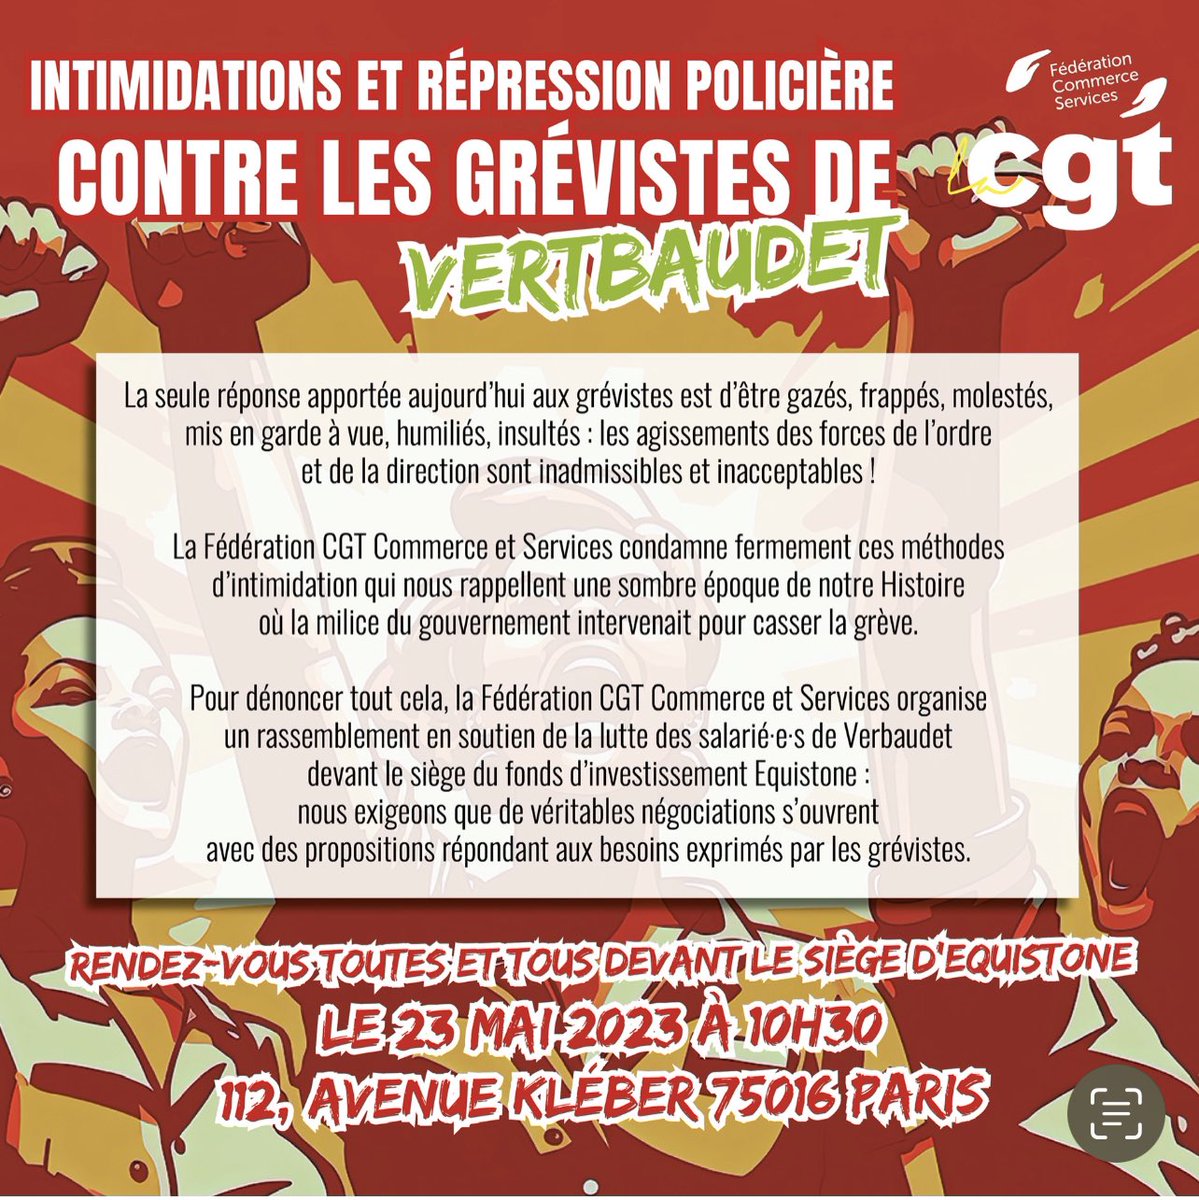 😡 Intimidations et répression policière contre les grévistes de Vertbaudet !

Rendez-vous toutes et tous devant le siège d’EQUISTONE le 23 mai 2023 à 10h30 au 112, avenue Kléber, dans le 16ème à Paris. @ThomasVacheron_ @Portes_Thomas @VerzelettiCeli1 @BinetSophie @CGT_Commerce